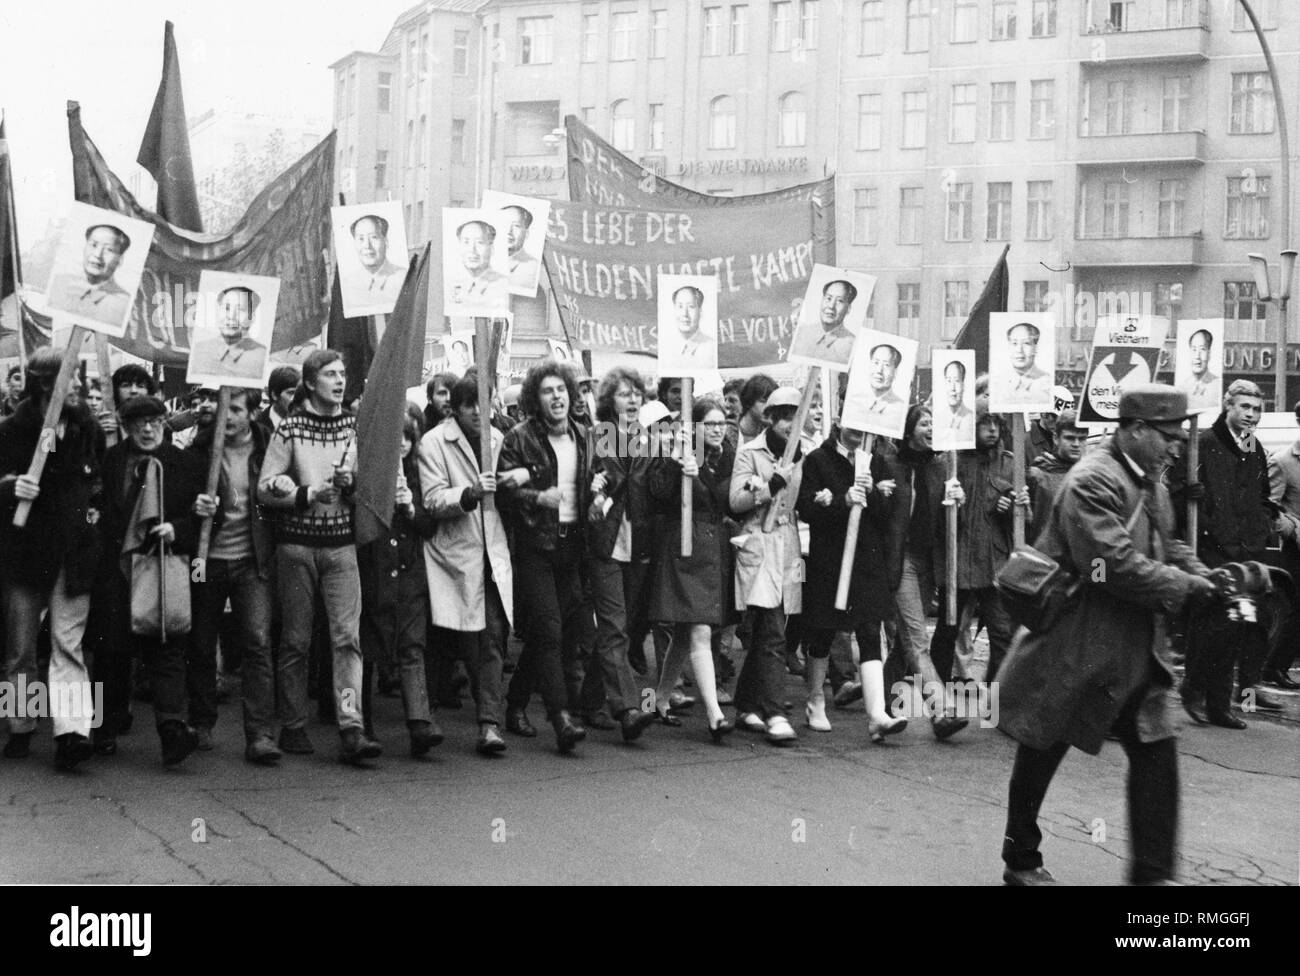 Mitglieder der Roten Garden in West-berlin demonstrieren gegen den Krieg in Vietnam mit dem Slogan 'Lang lebe der heroischen Kampf des vietnamesischen Volkes". Sie tragen die Portraits der chinesischen Parteichef Mao Zedong. Stockfoto